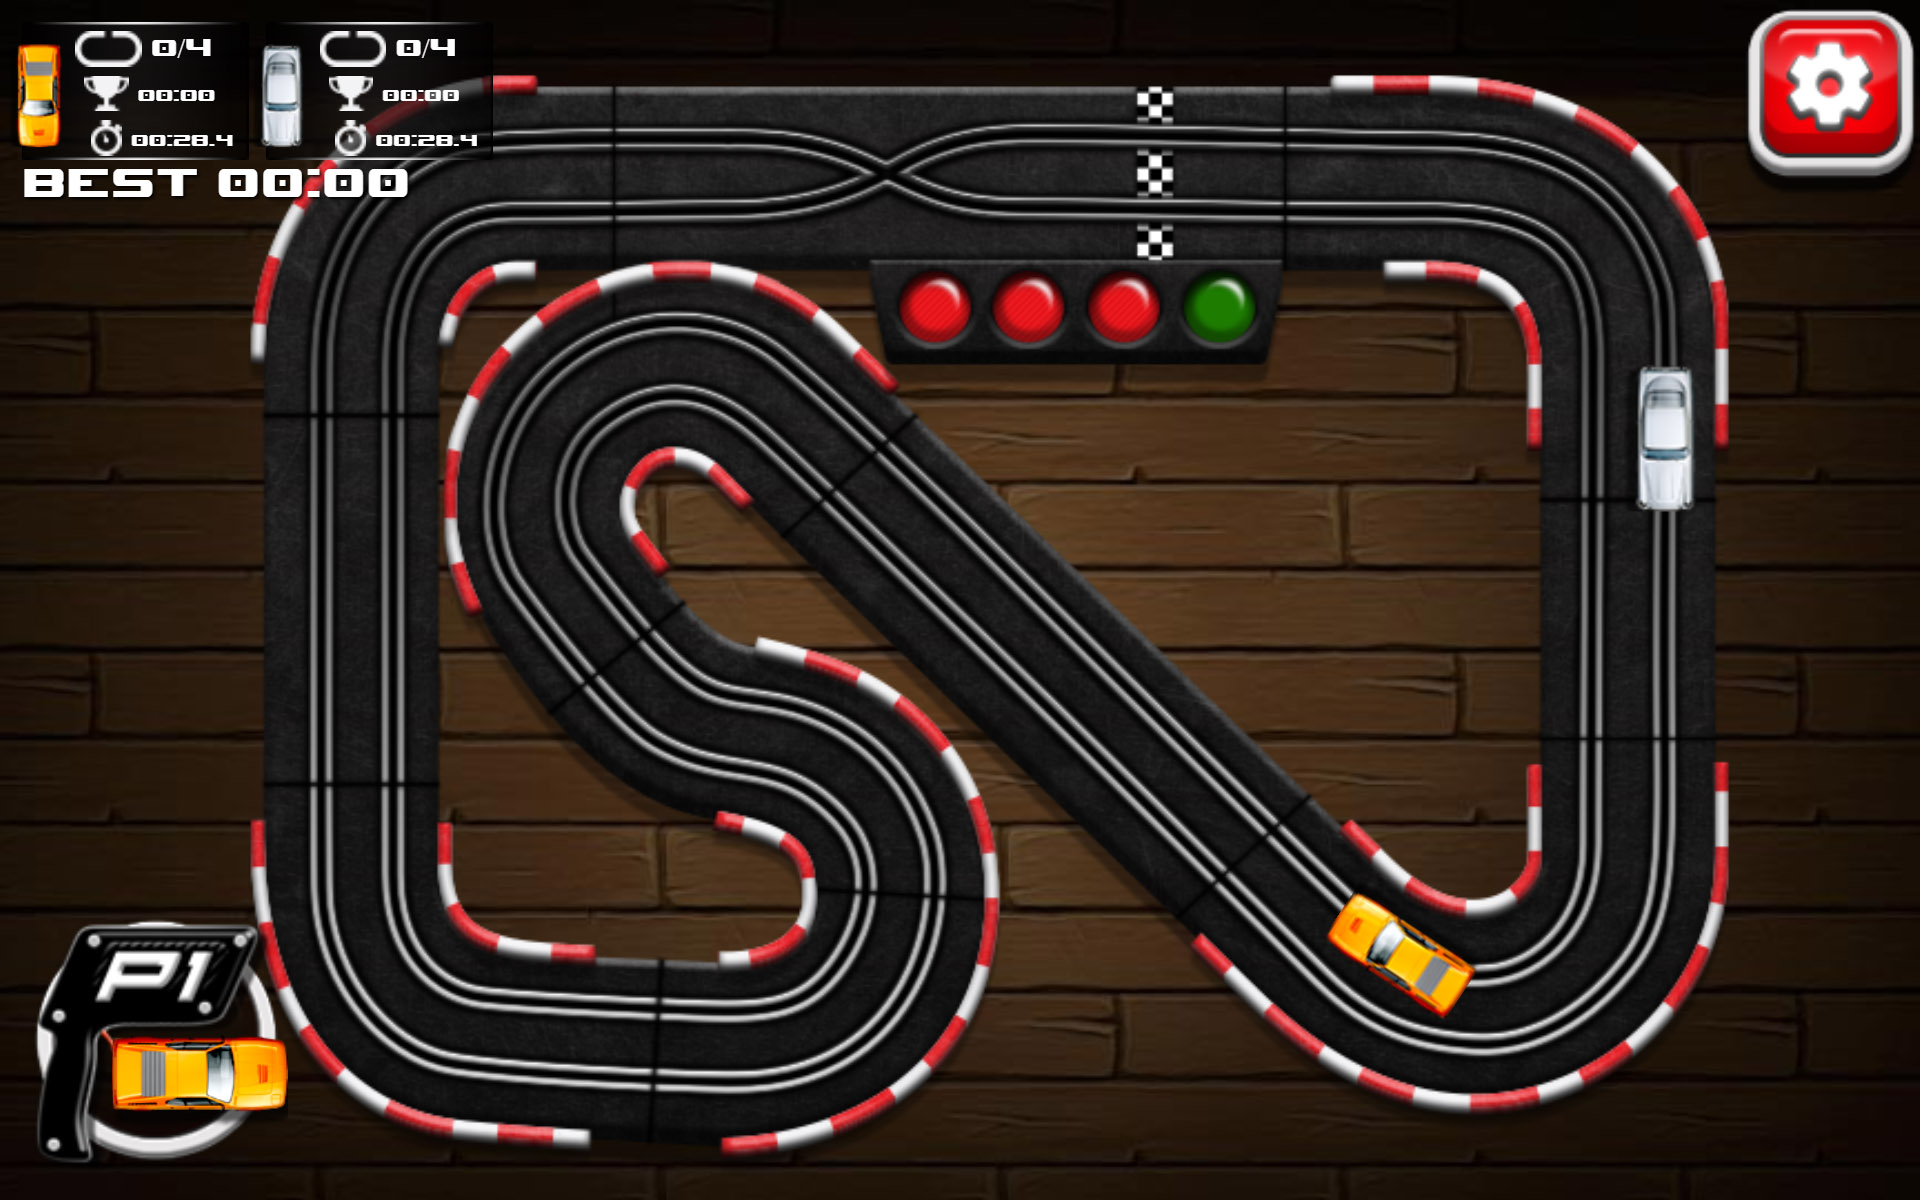 slot car racing game